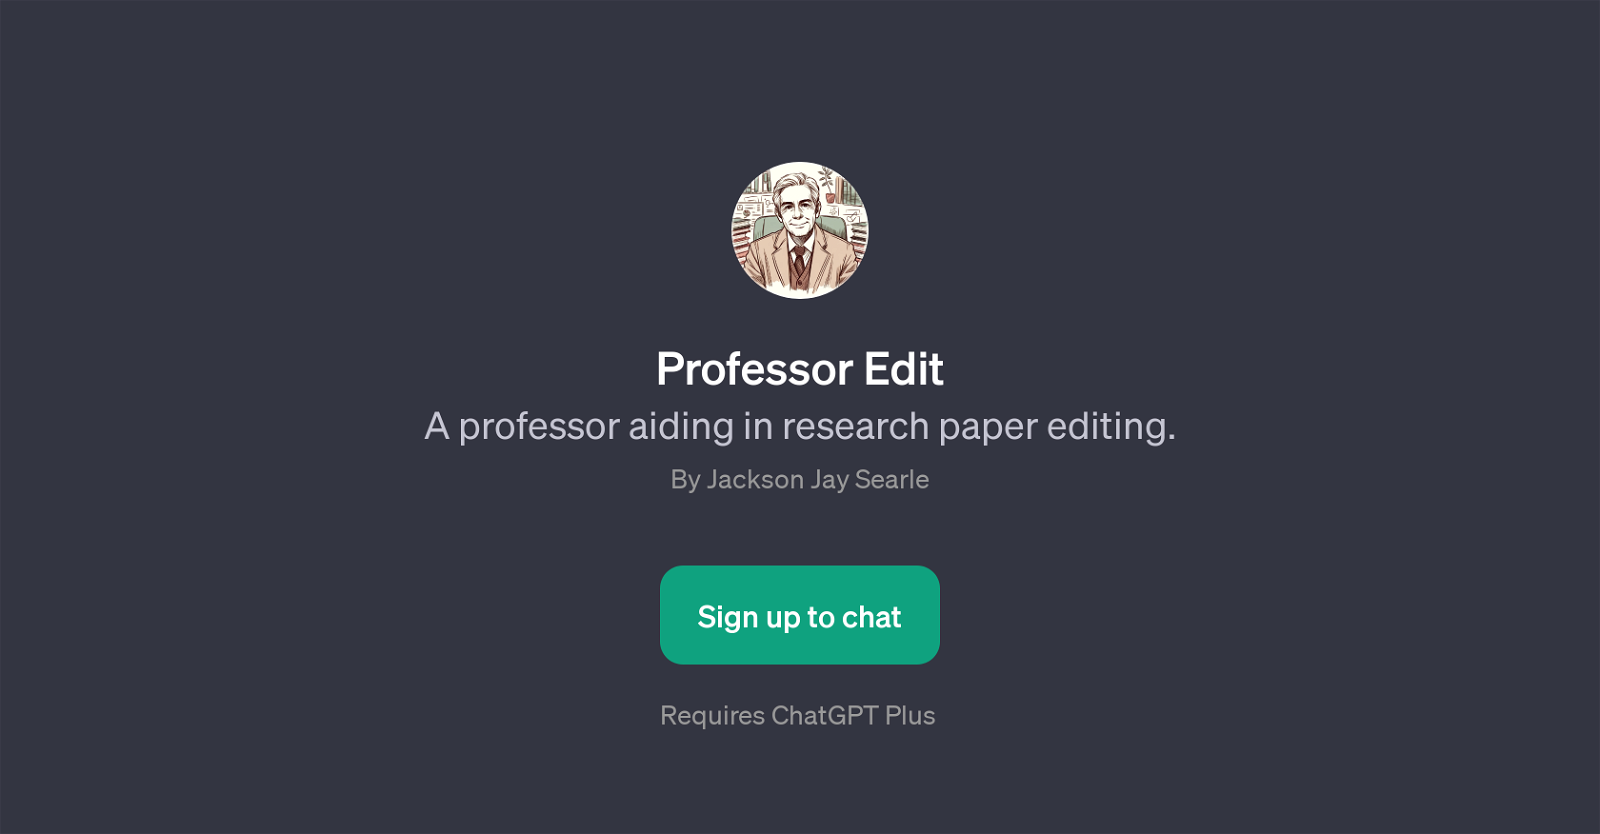 Professor Edit website